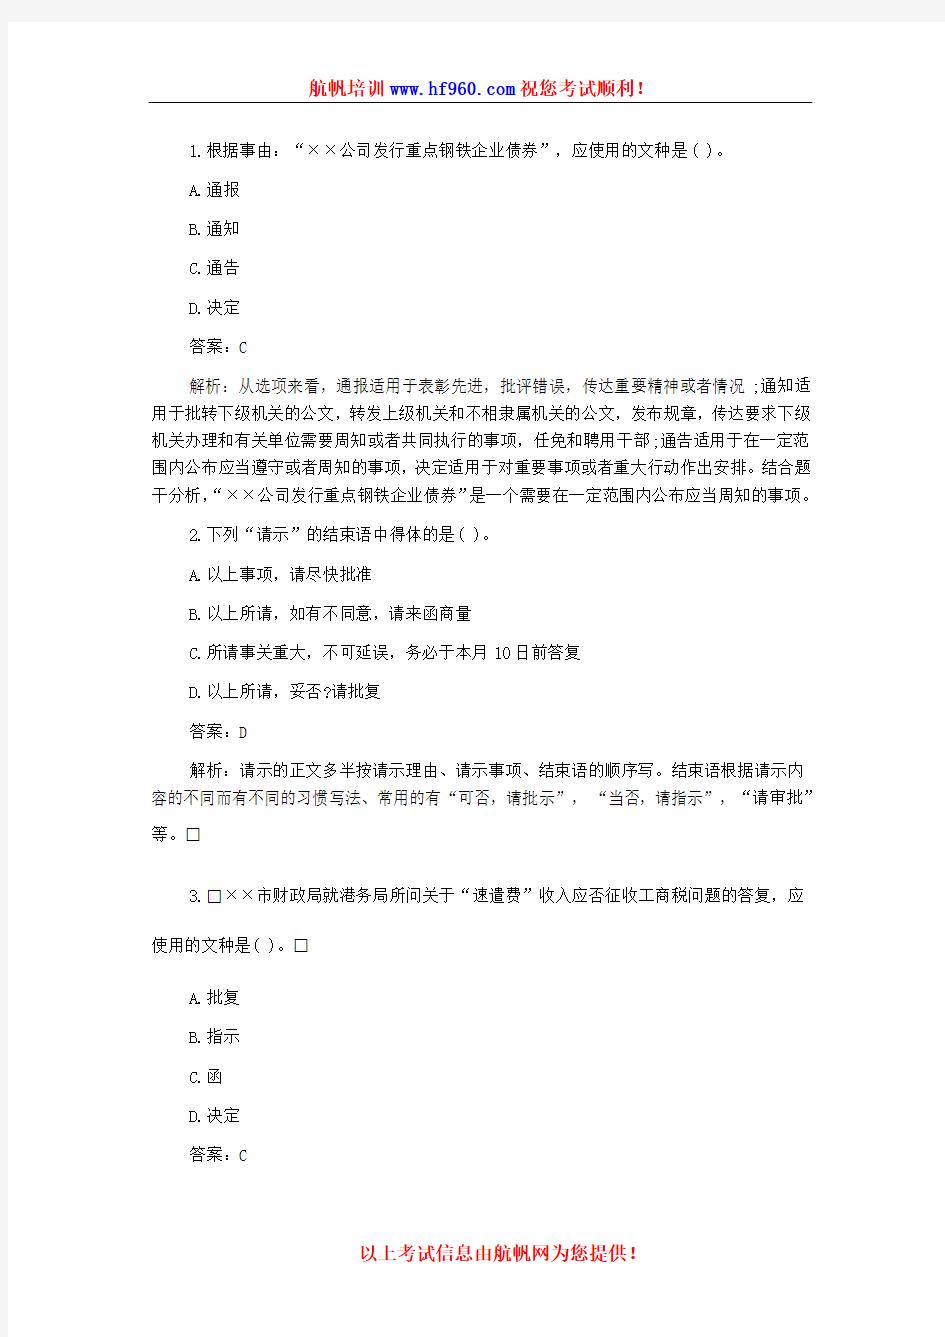 2014年云南省农村信用社招聘考试基础知识测试考题